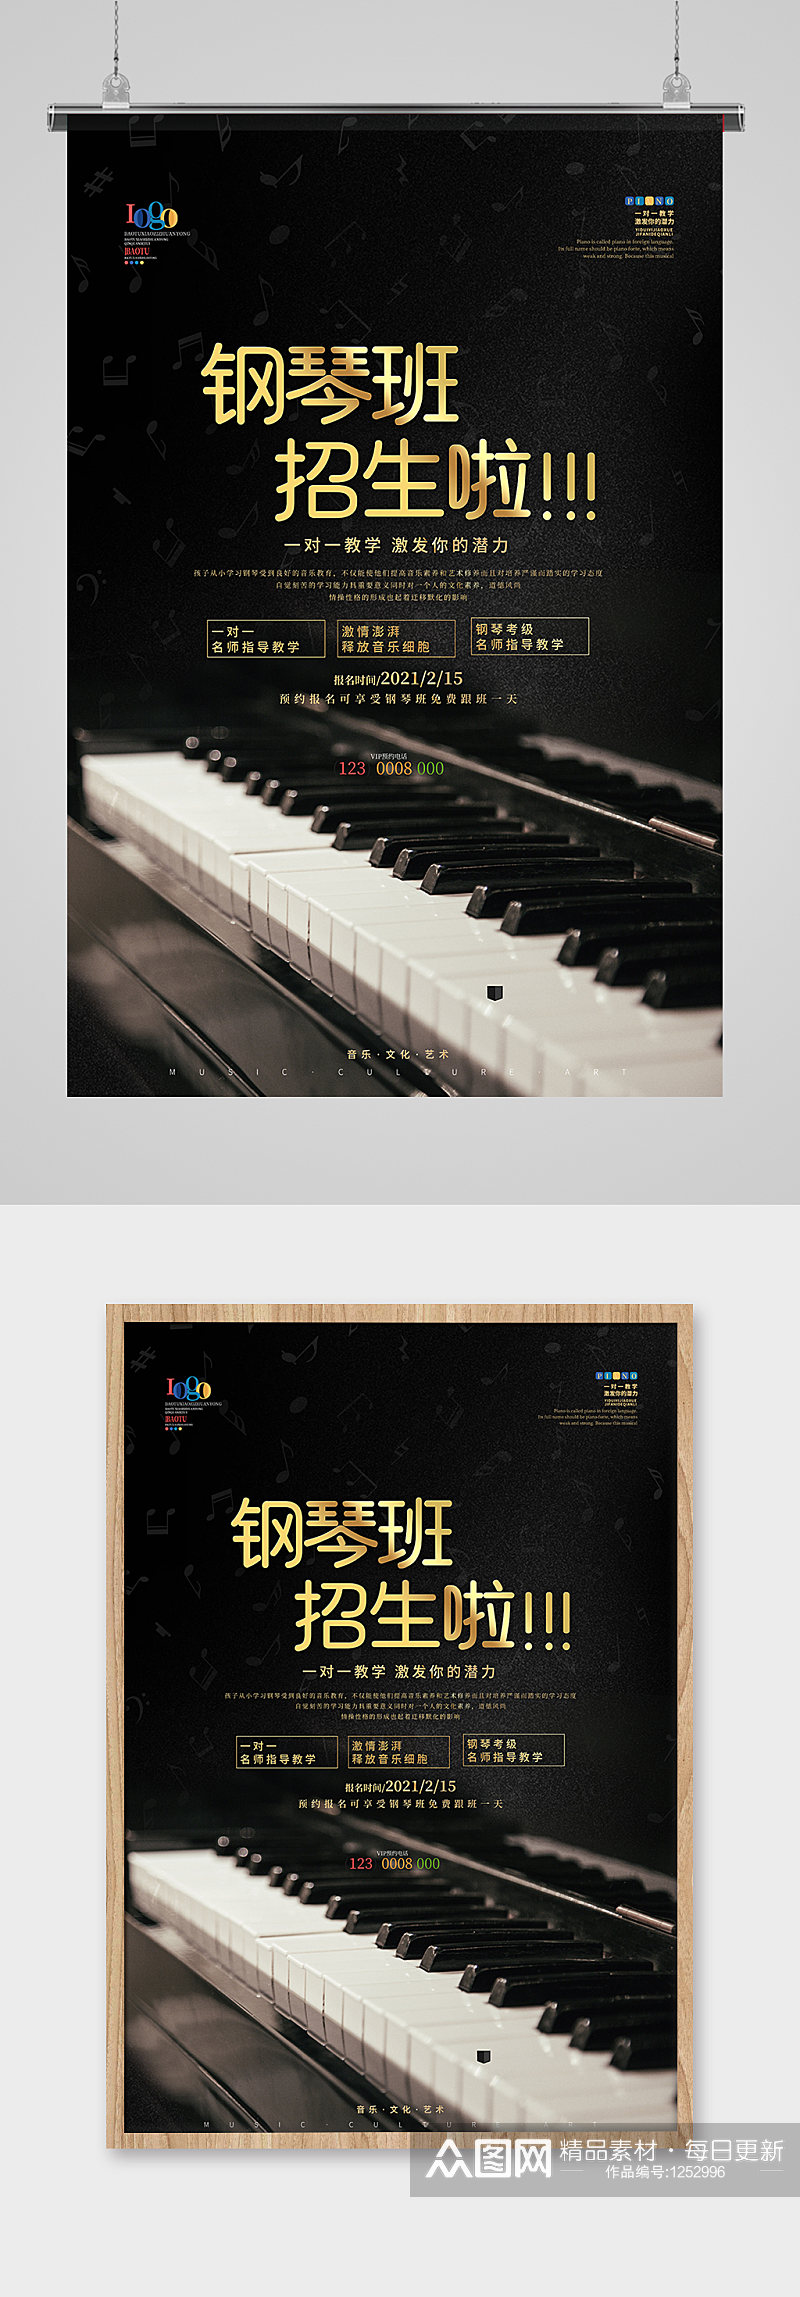 钢琴班招生宣传海报设计素材